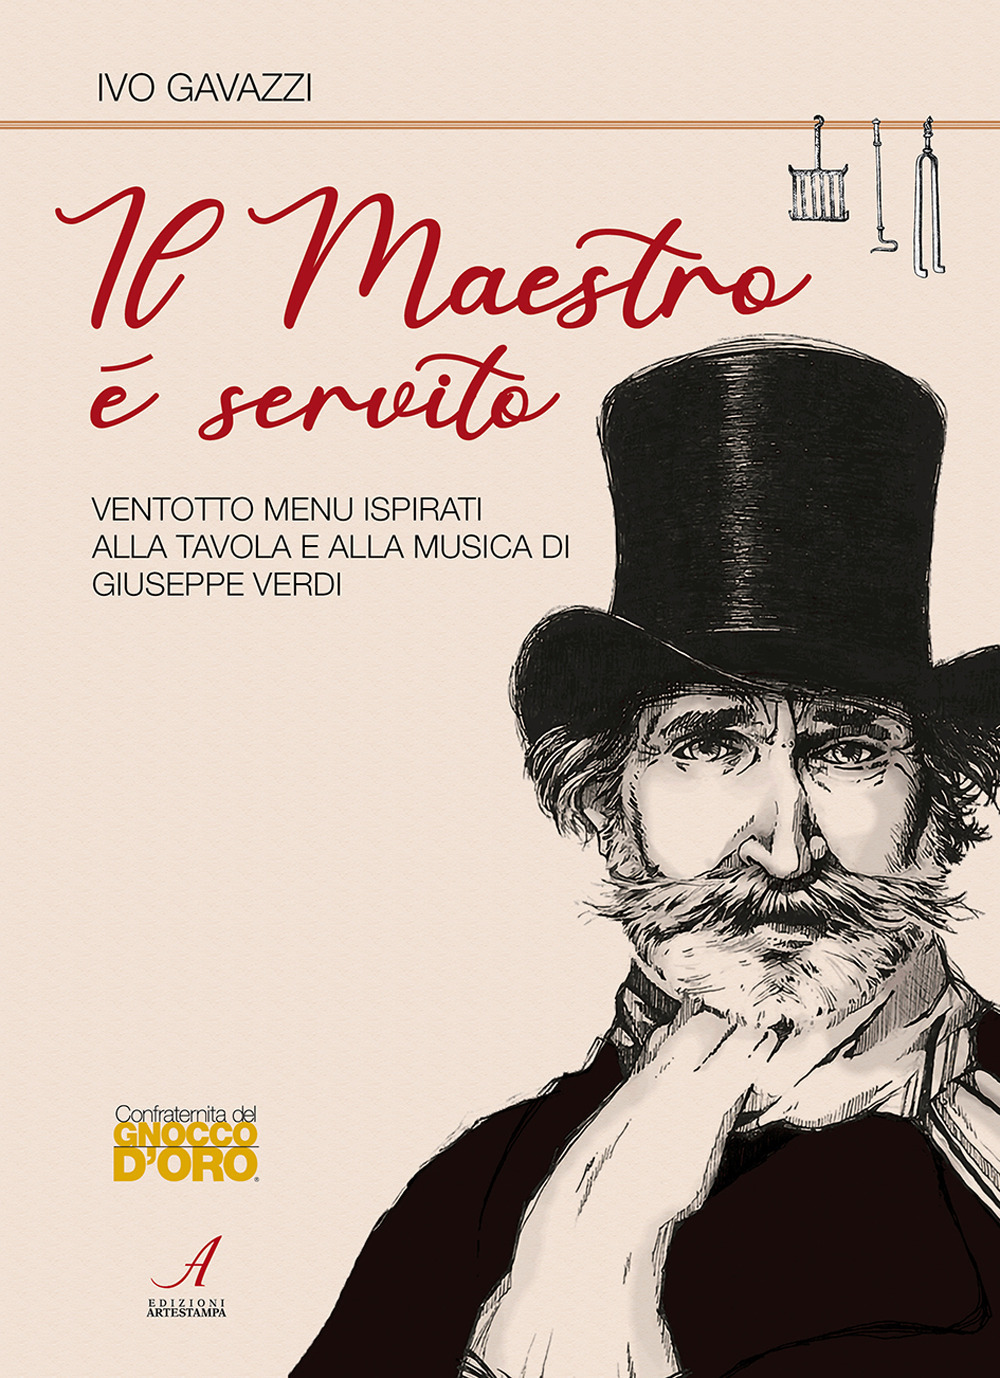 Image of Il Maestro è servito. Ventotto menu ispirati alla tavola e alla musica di Giuseppe Verdi